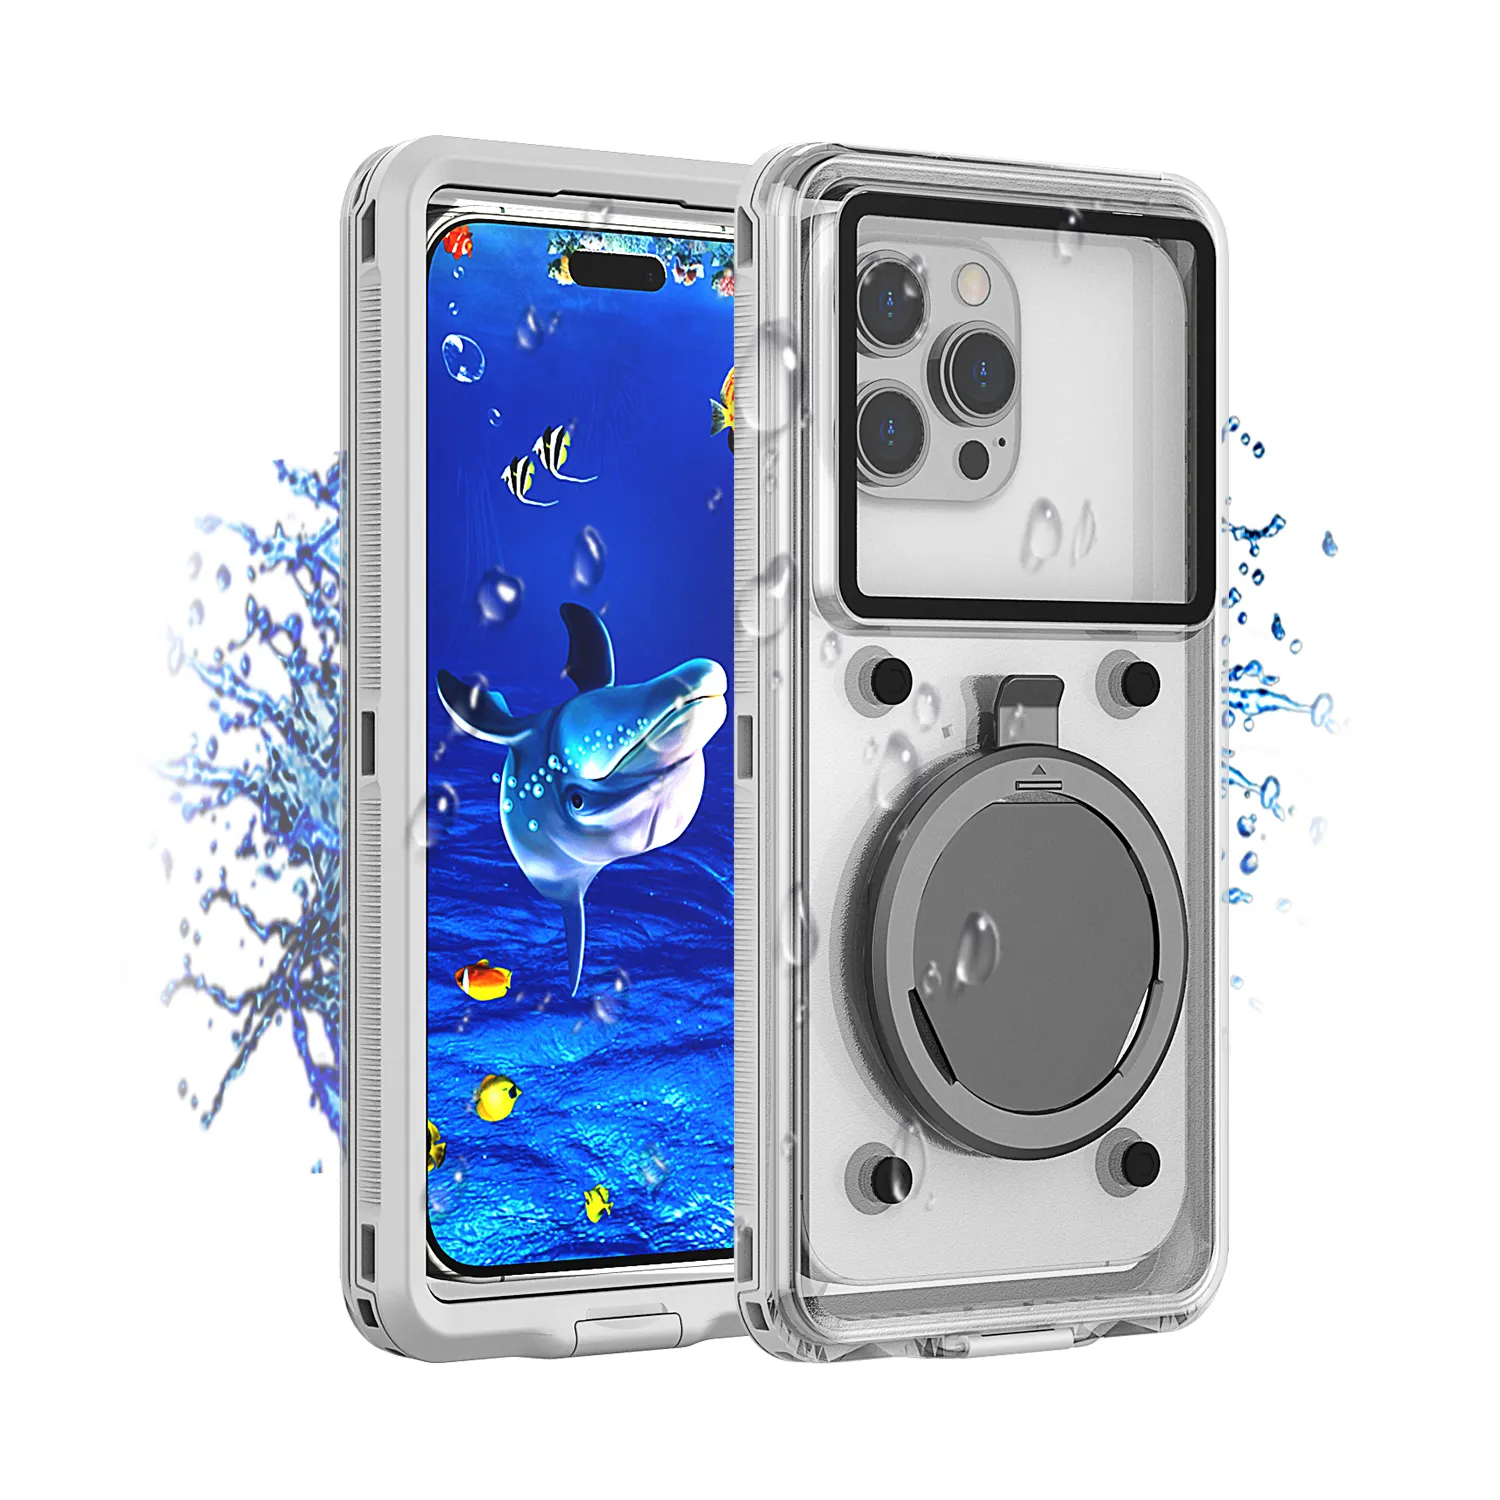 TPU PC Outdoor Schwimmen Unterwasser Universal Clear Water Proof Phone Case Wasserdichte stoß feste Abdeckung Handy hülle